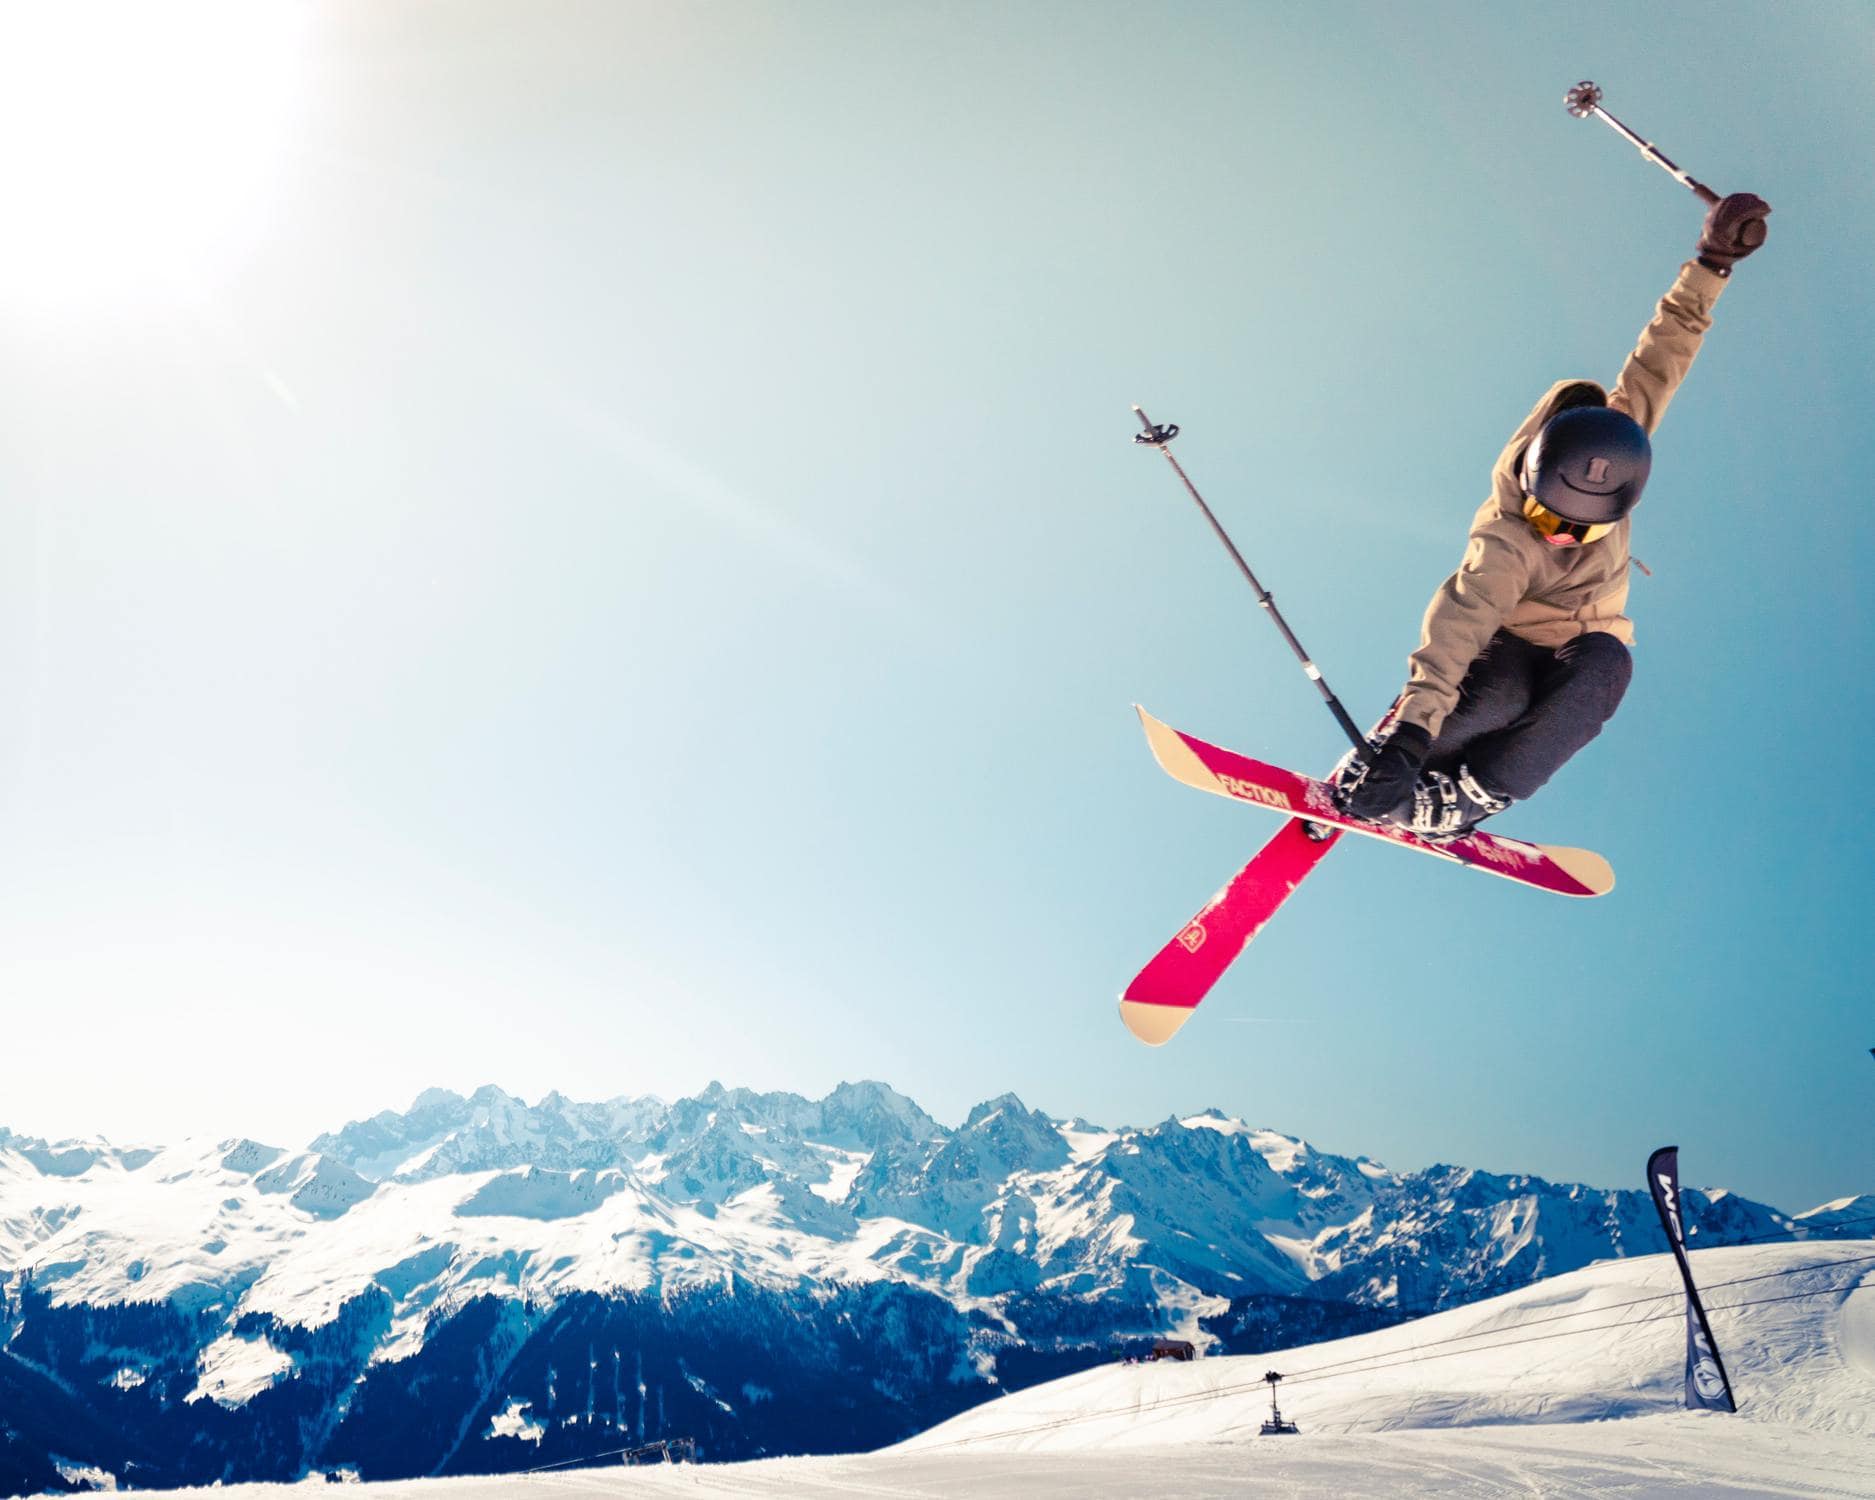 Tricksprung einer skifahrenden Person im Schnee als Beispiel für Wintersport